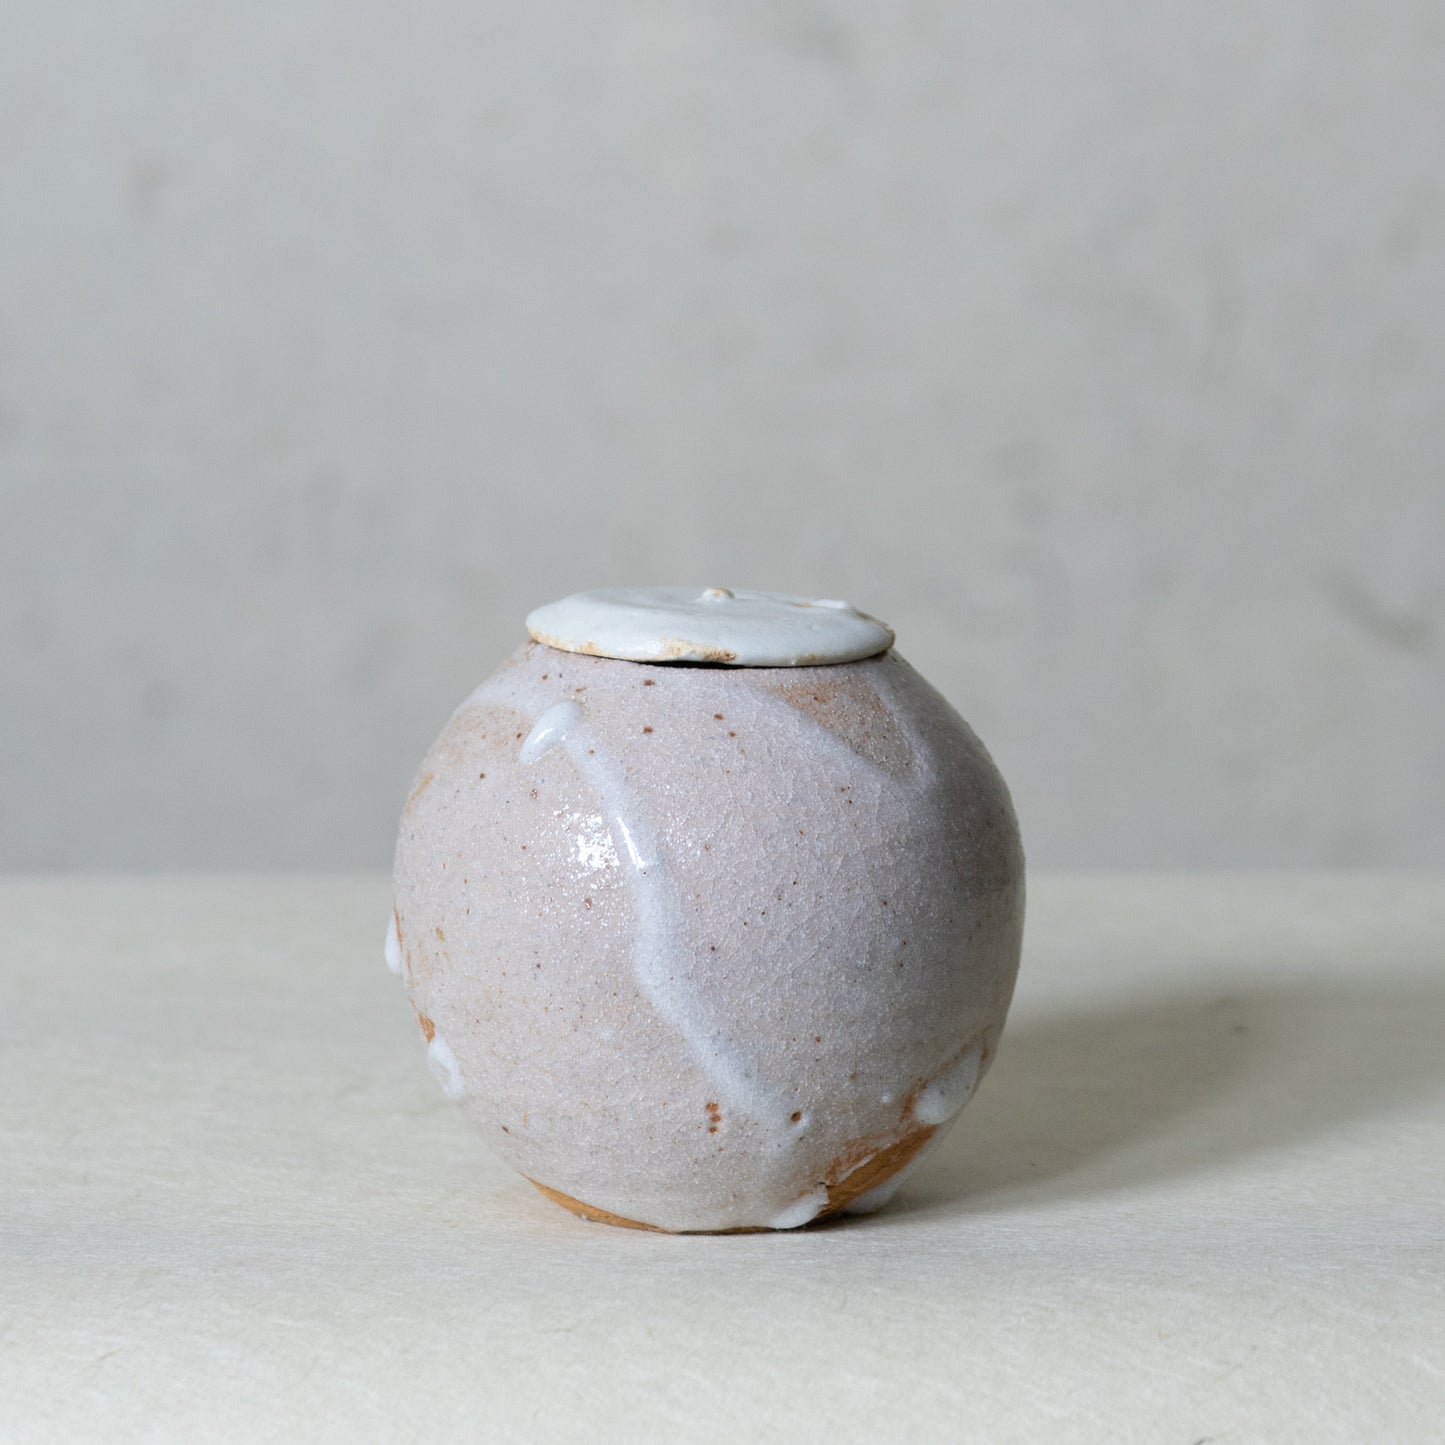 志野茶具 (st02593)